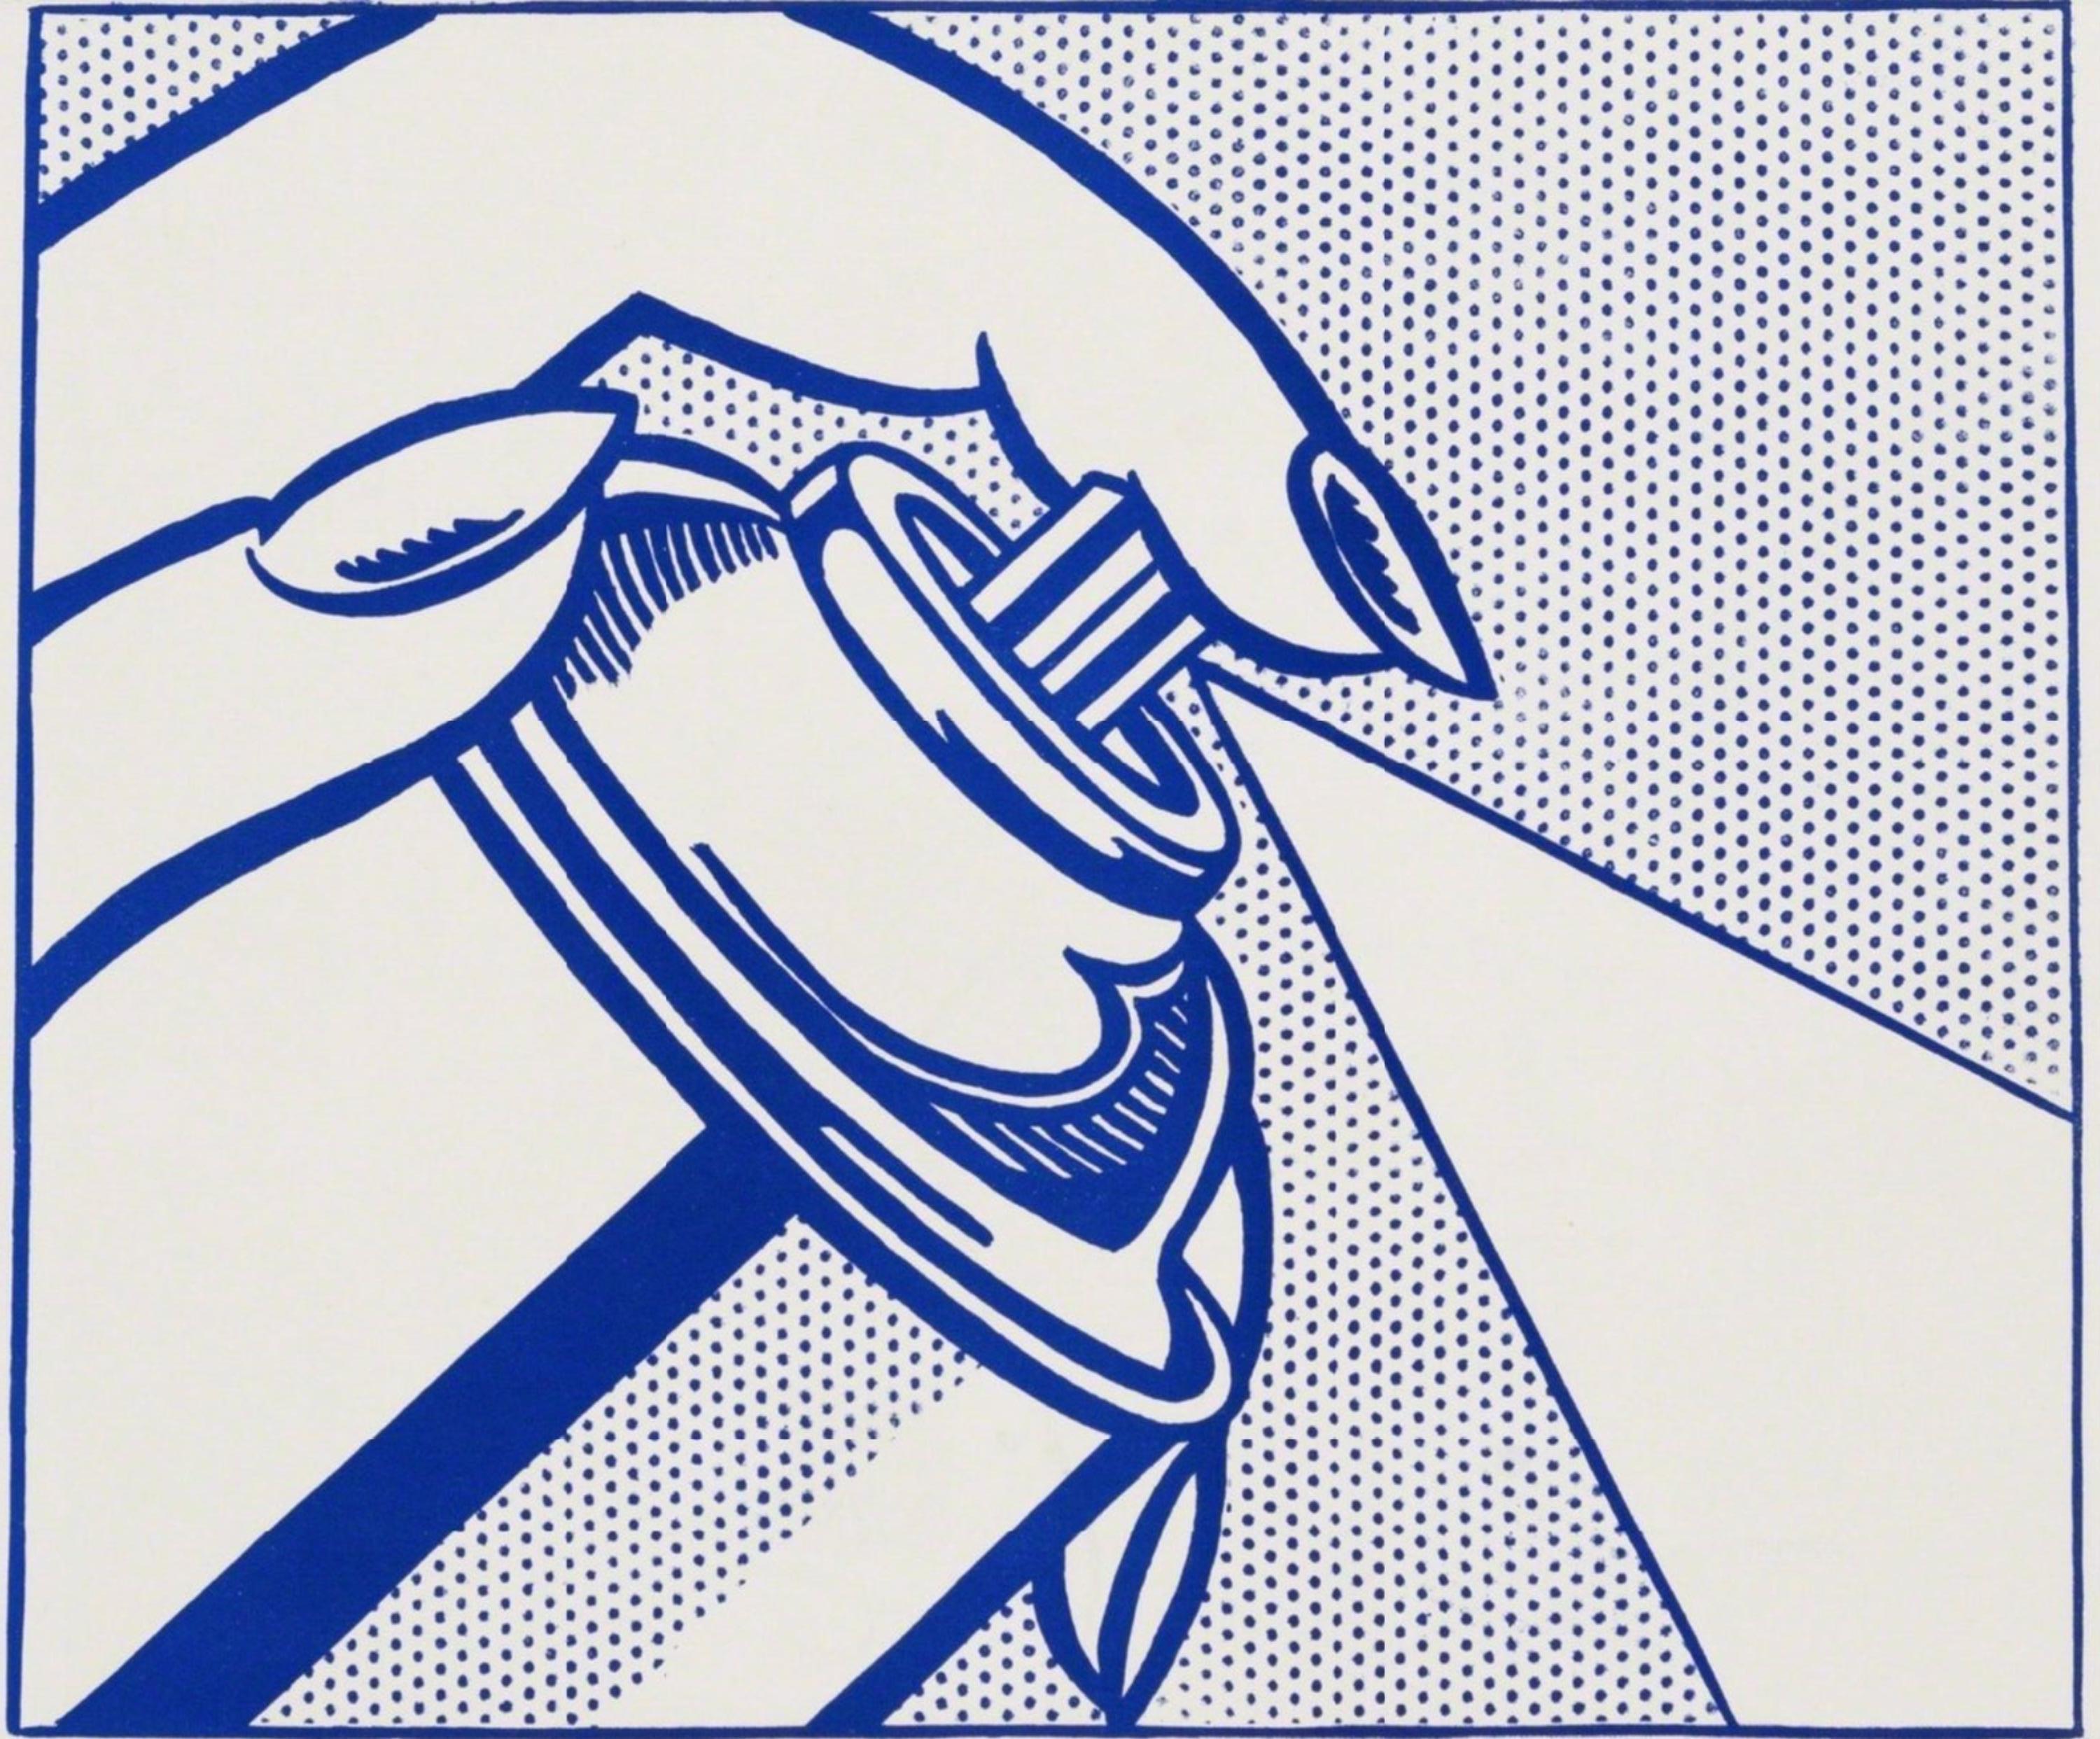 Spray Can - Print by Roy Lichtenstein